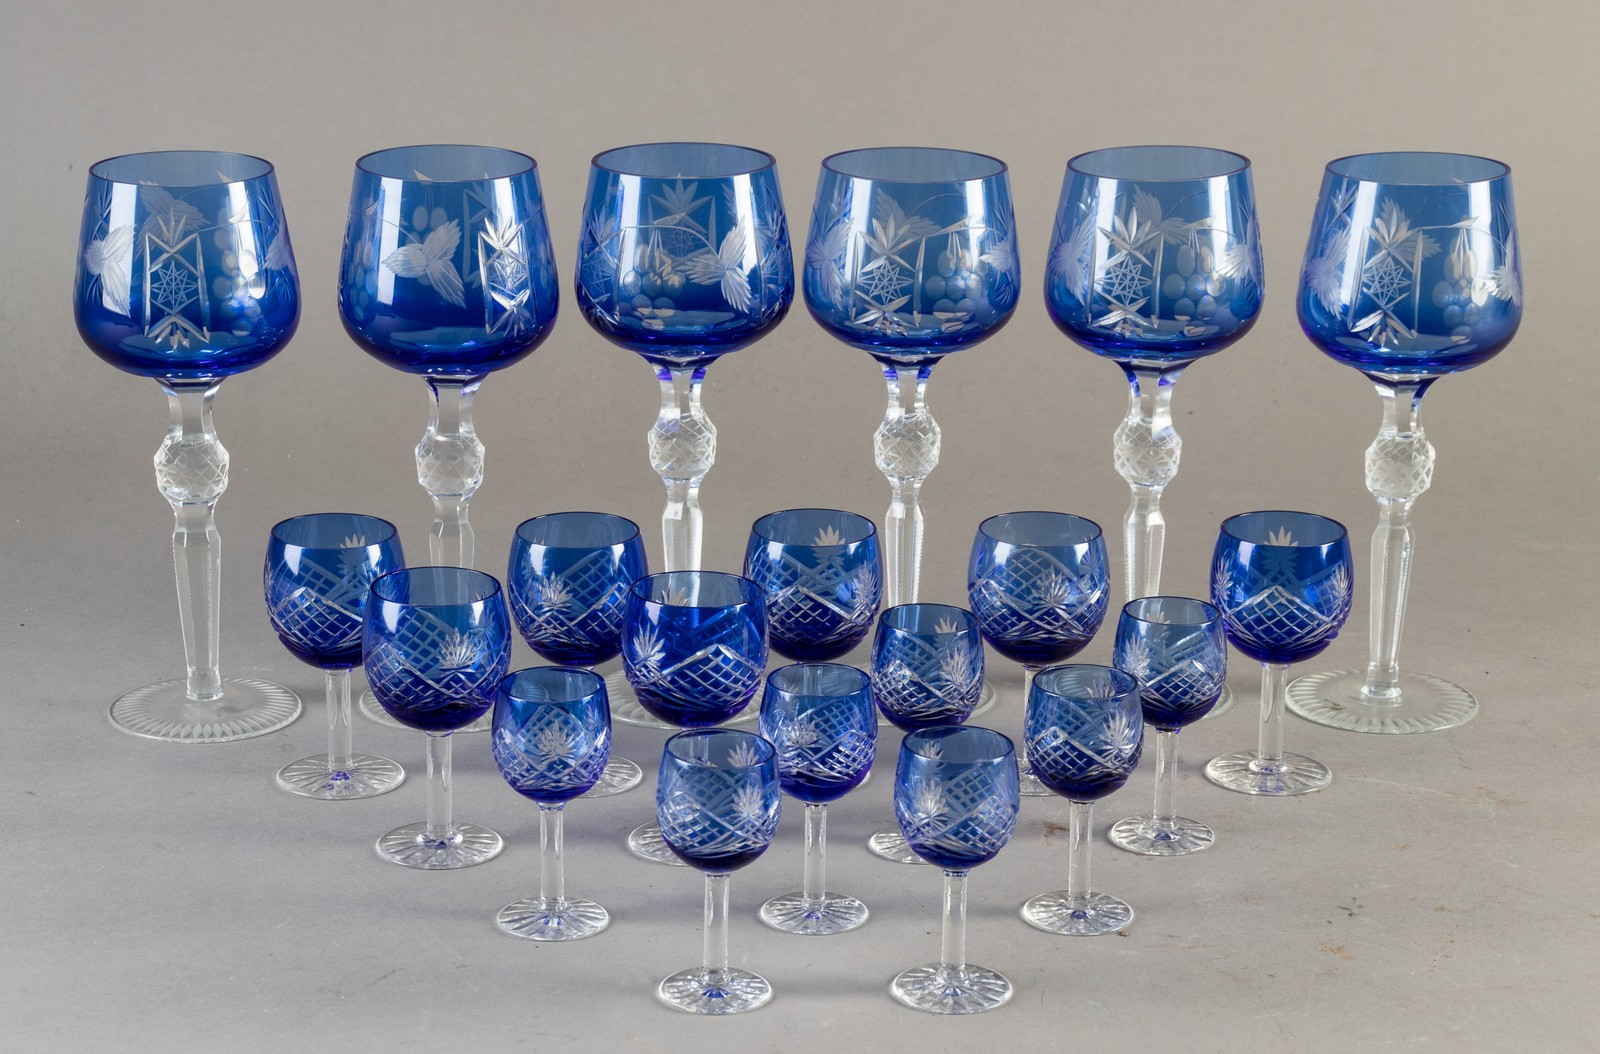 håndlavede Böhmiske glas af krystalglas.(20) | Lauritz.com